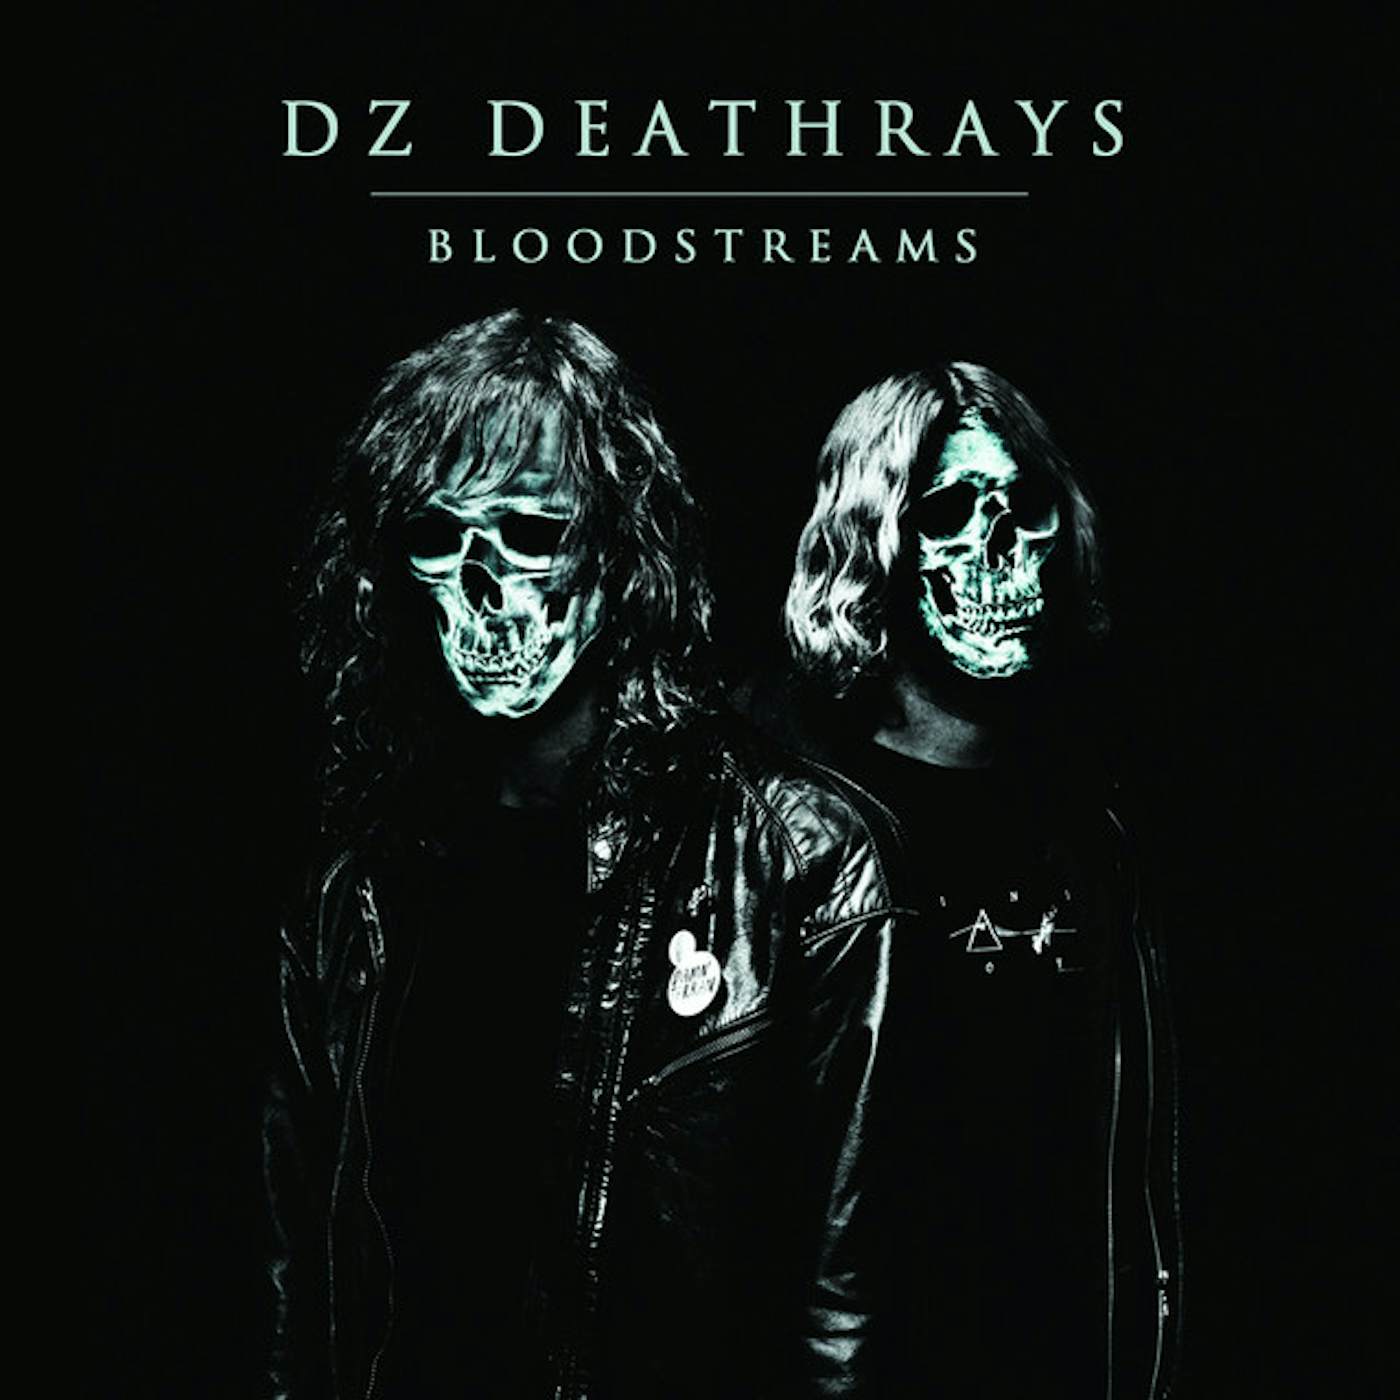 DZ Deathrays Bloodstreams Vinyl Record